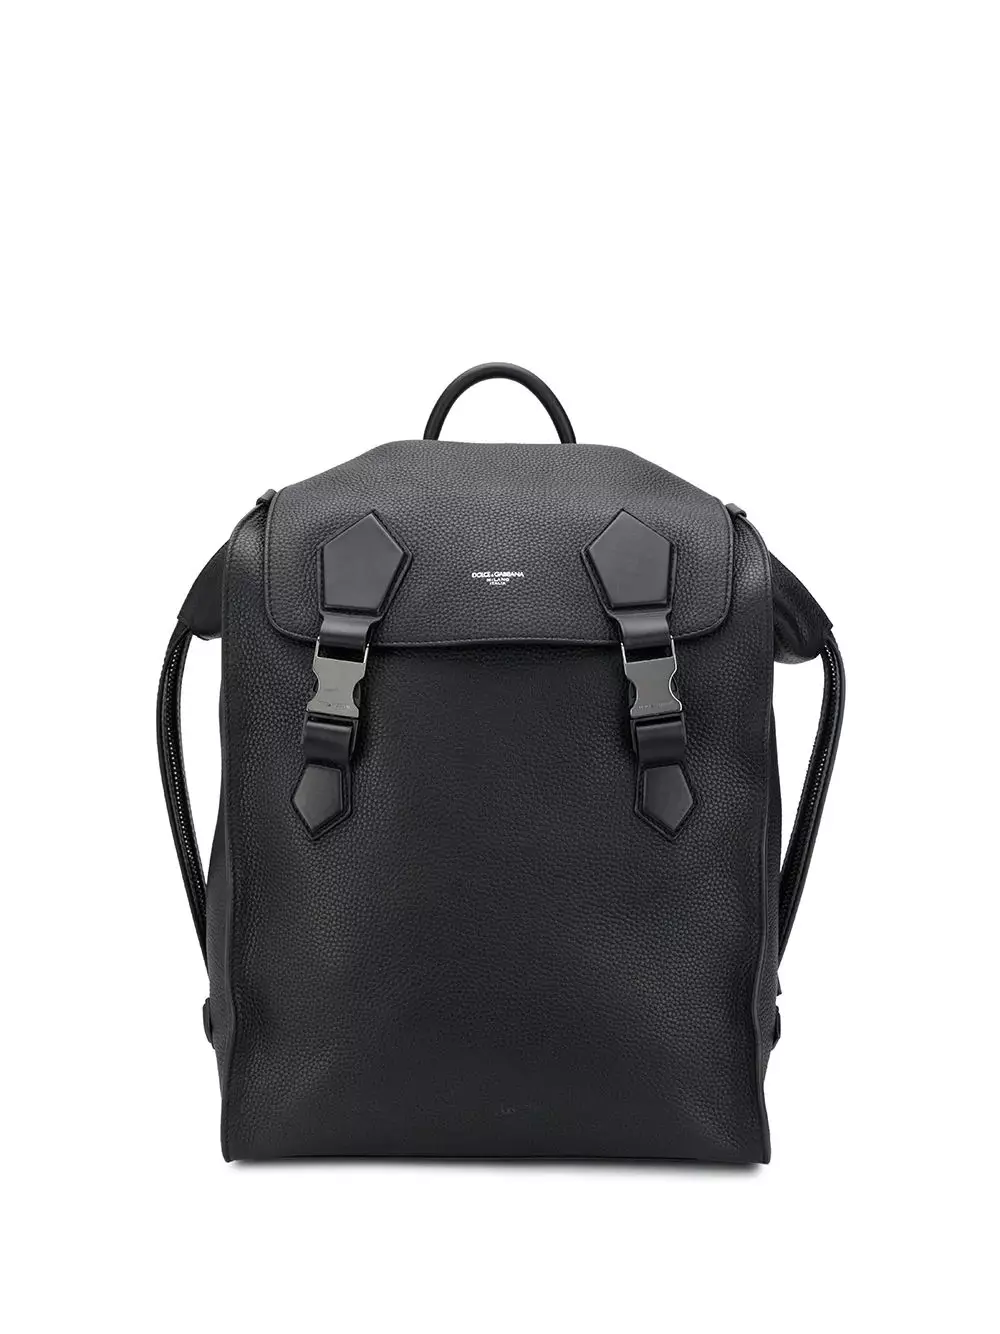 Dolce & Gabbana hátizsákok: Nő és férfi, fekete és piros, bőr hátizsákok táskák és egyéb modellek. Hogyan lehet megkülönböztetni az eredetit a másolatból? 2559_29